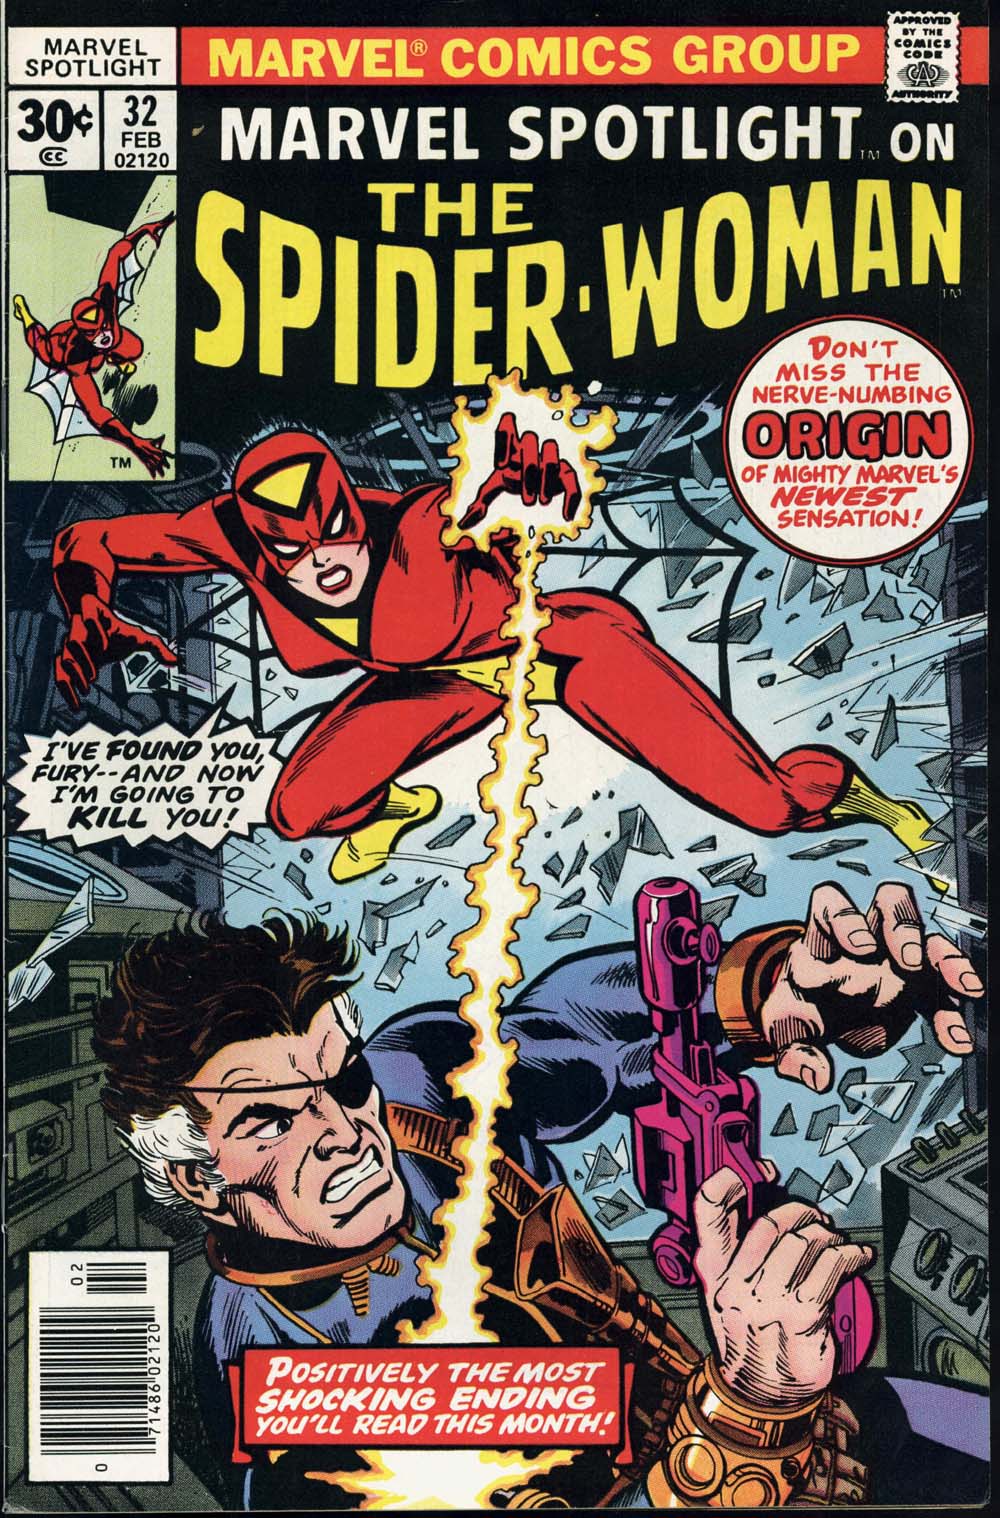 Portada del Marvel Spotlight 32 en el que se anuncia a The Spider-Woman y se anuncia que dentro viene su origen. La vemos lanzándole un 'venom blast' a Furia. Y va con la parte superior de la cara tapada por una capucha.